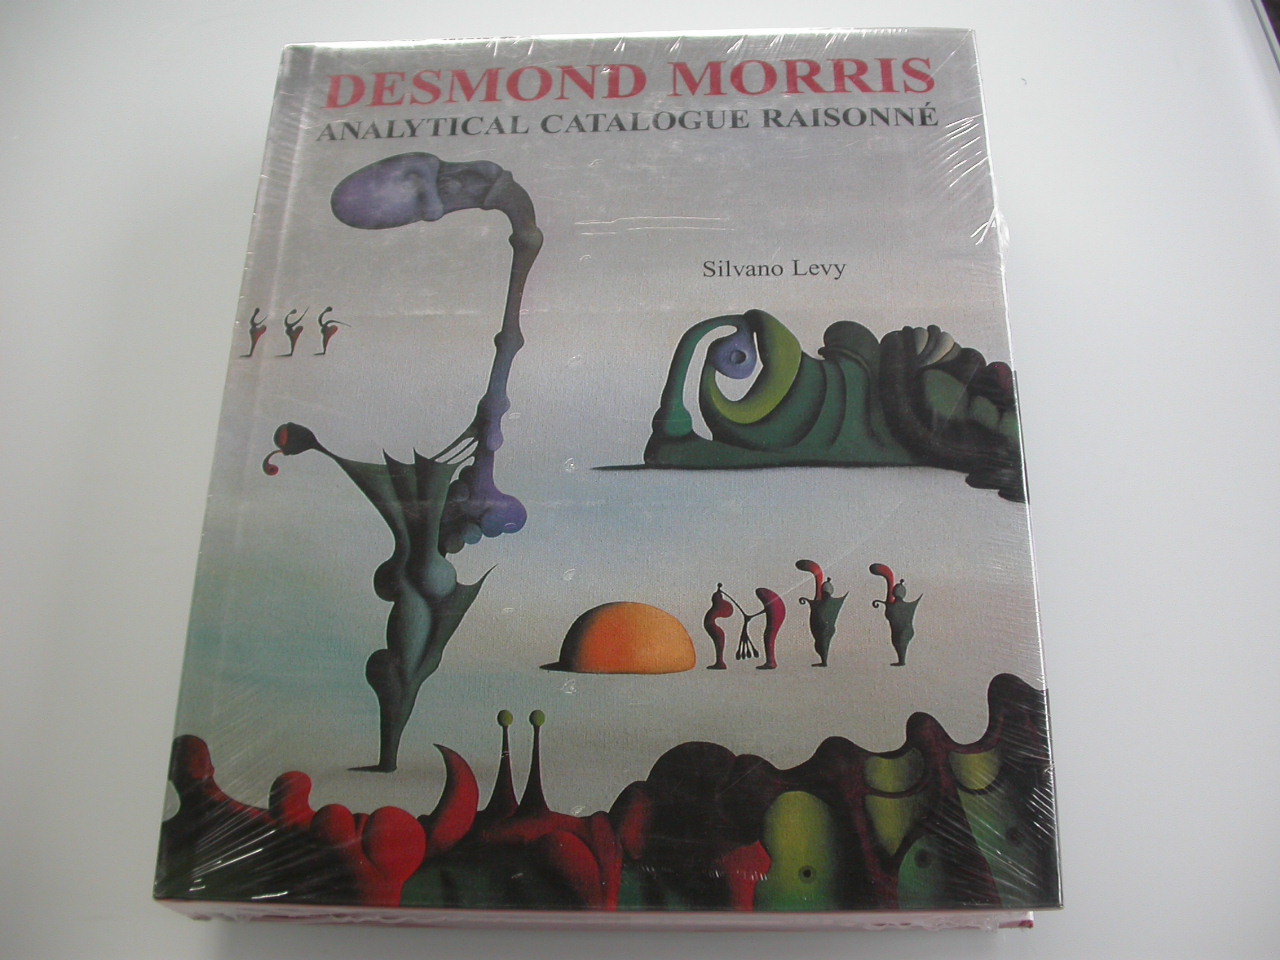 24 januari 1928 geboortedag Desmond Morris